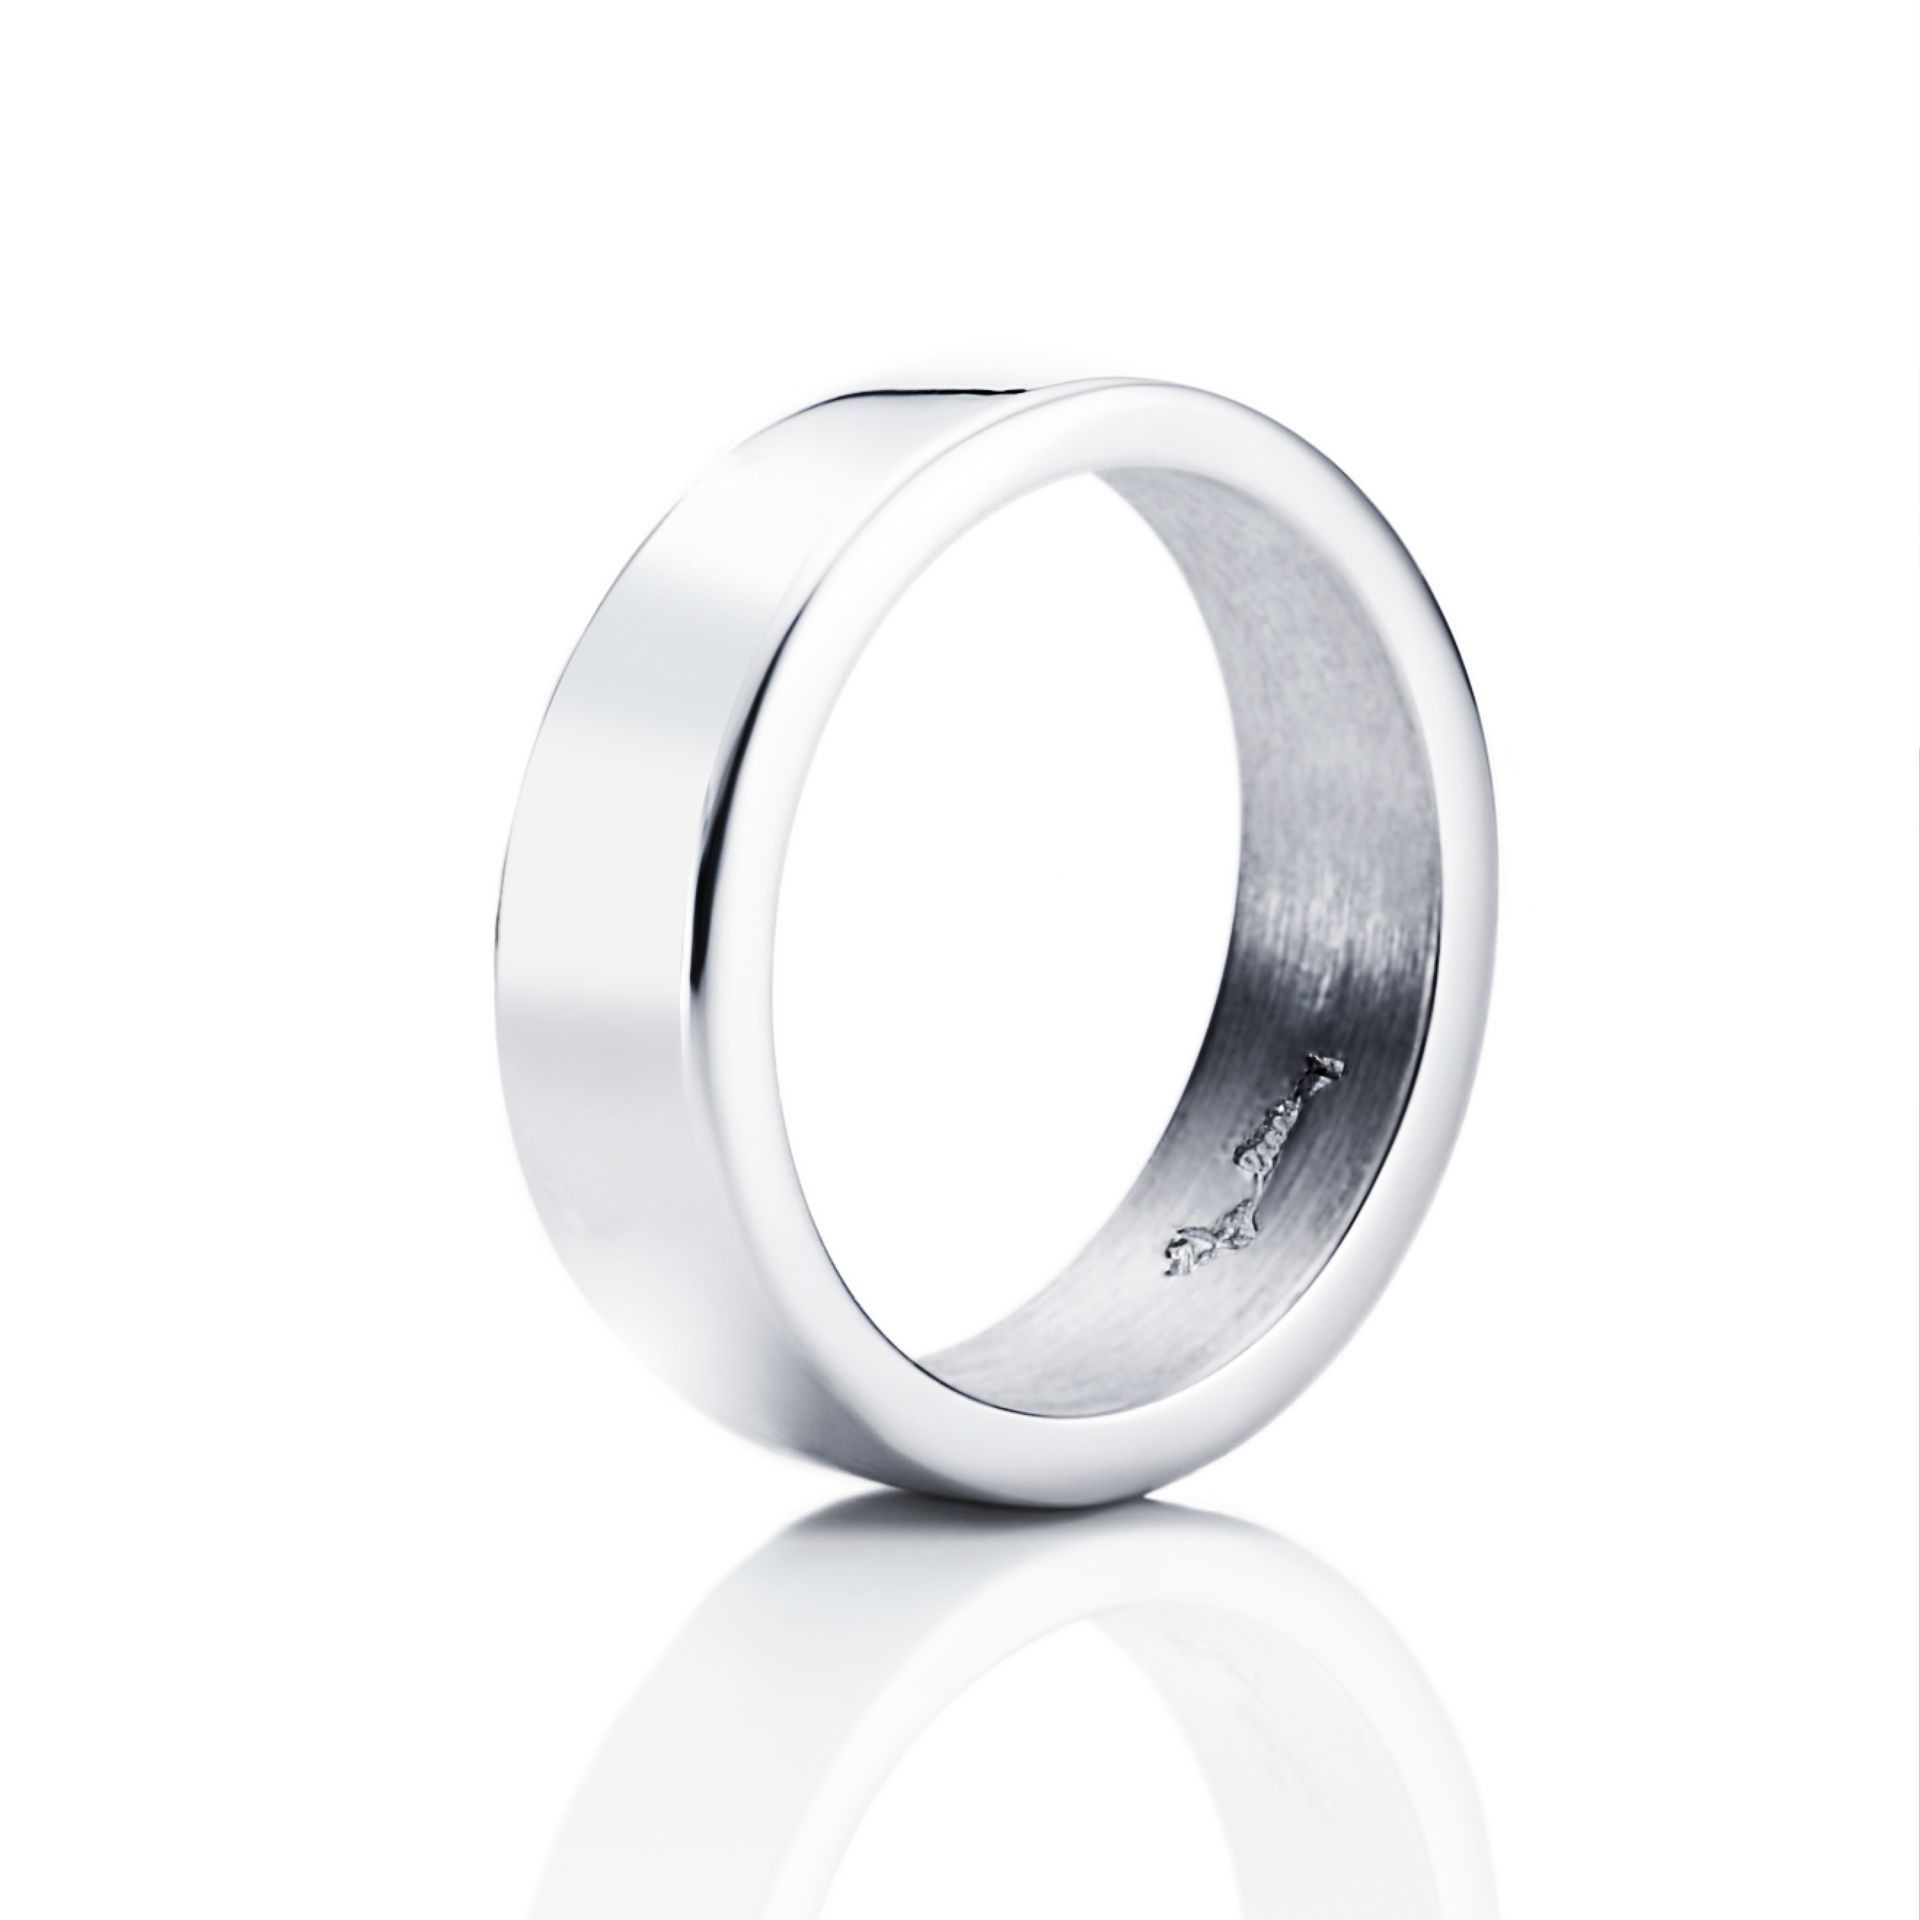 Läs mer om Efva Attling Irregular Ring 15.75 MM - SILVER